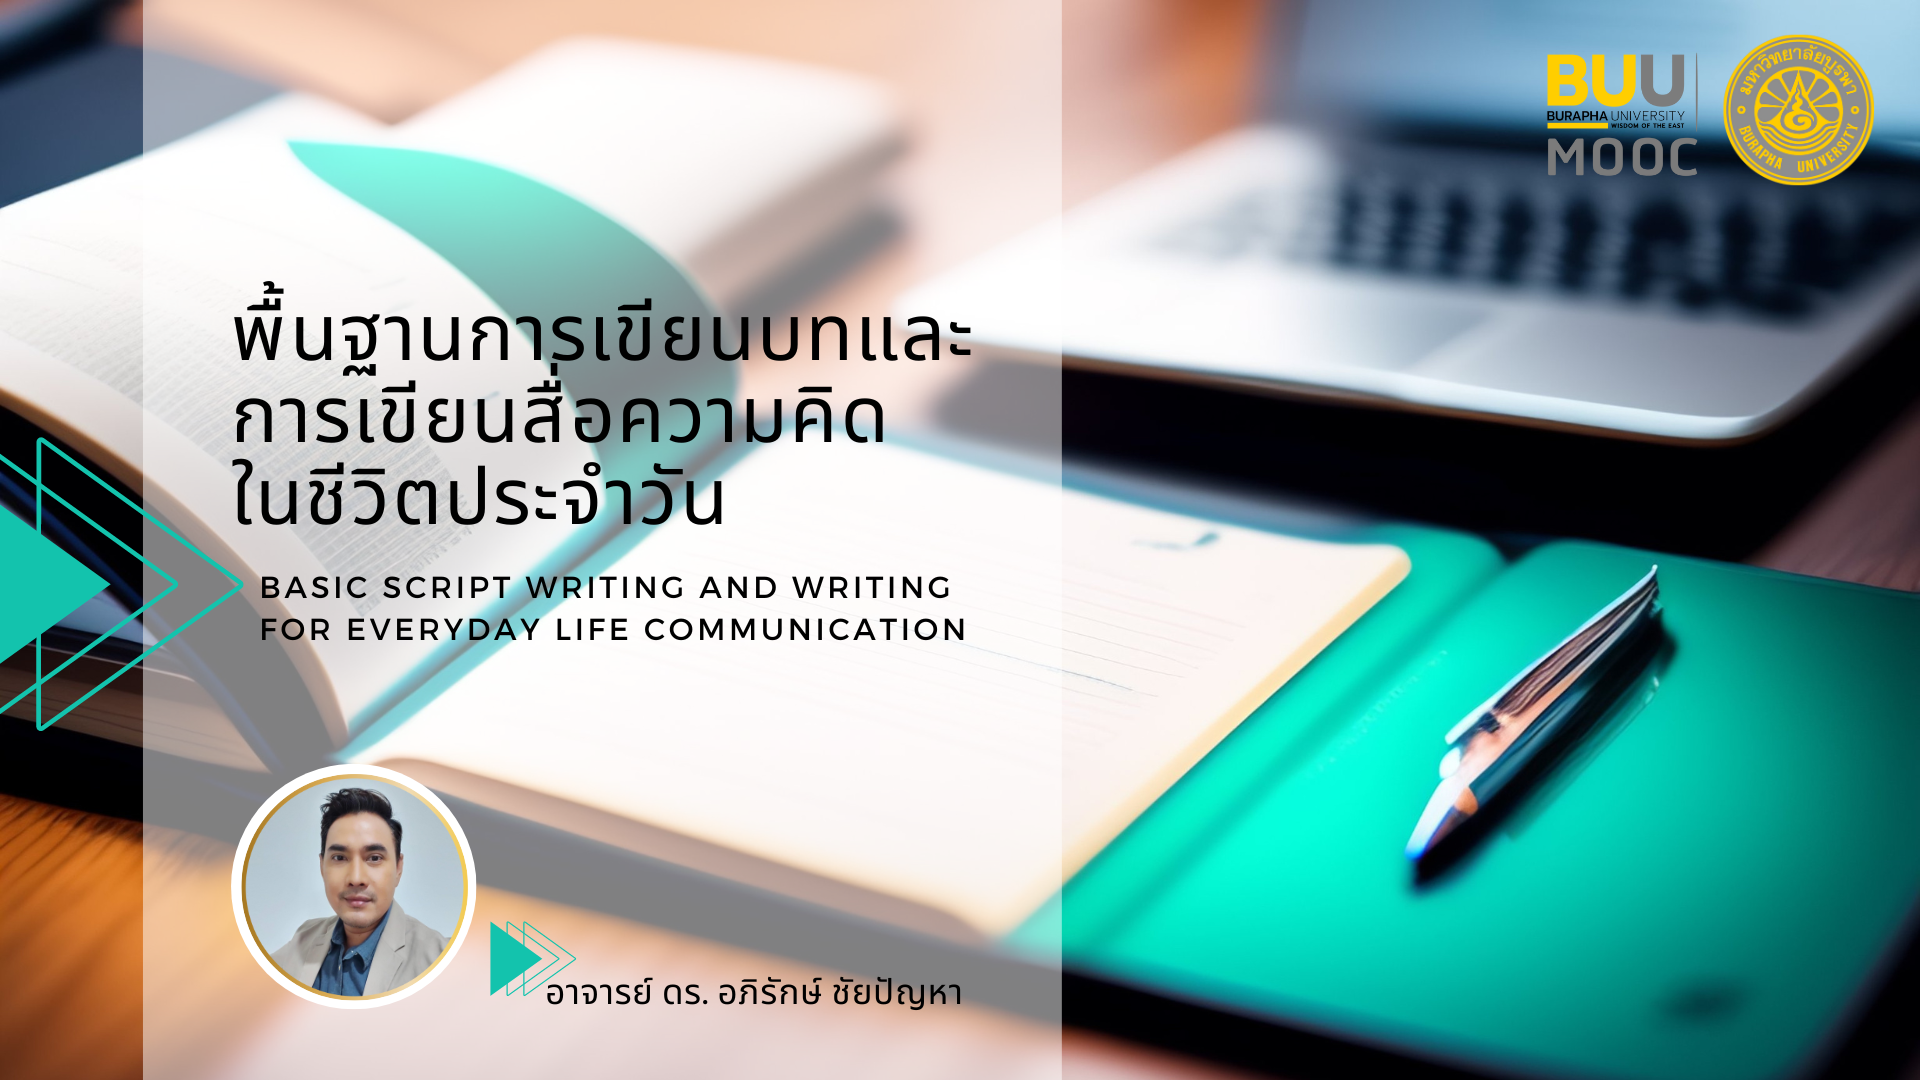 พื้นฐานการเขียนบทและการเขียนสื่อความคิดในชีวิตประจำวัน (Basic Script Writing and Writing for Everyday Life Communication) HUSO008